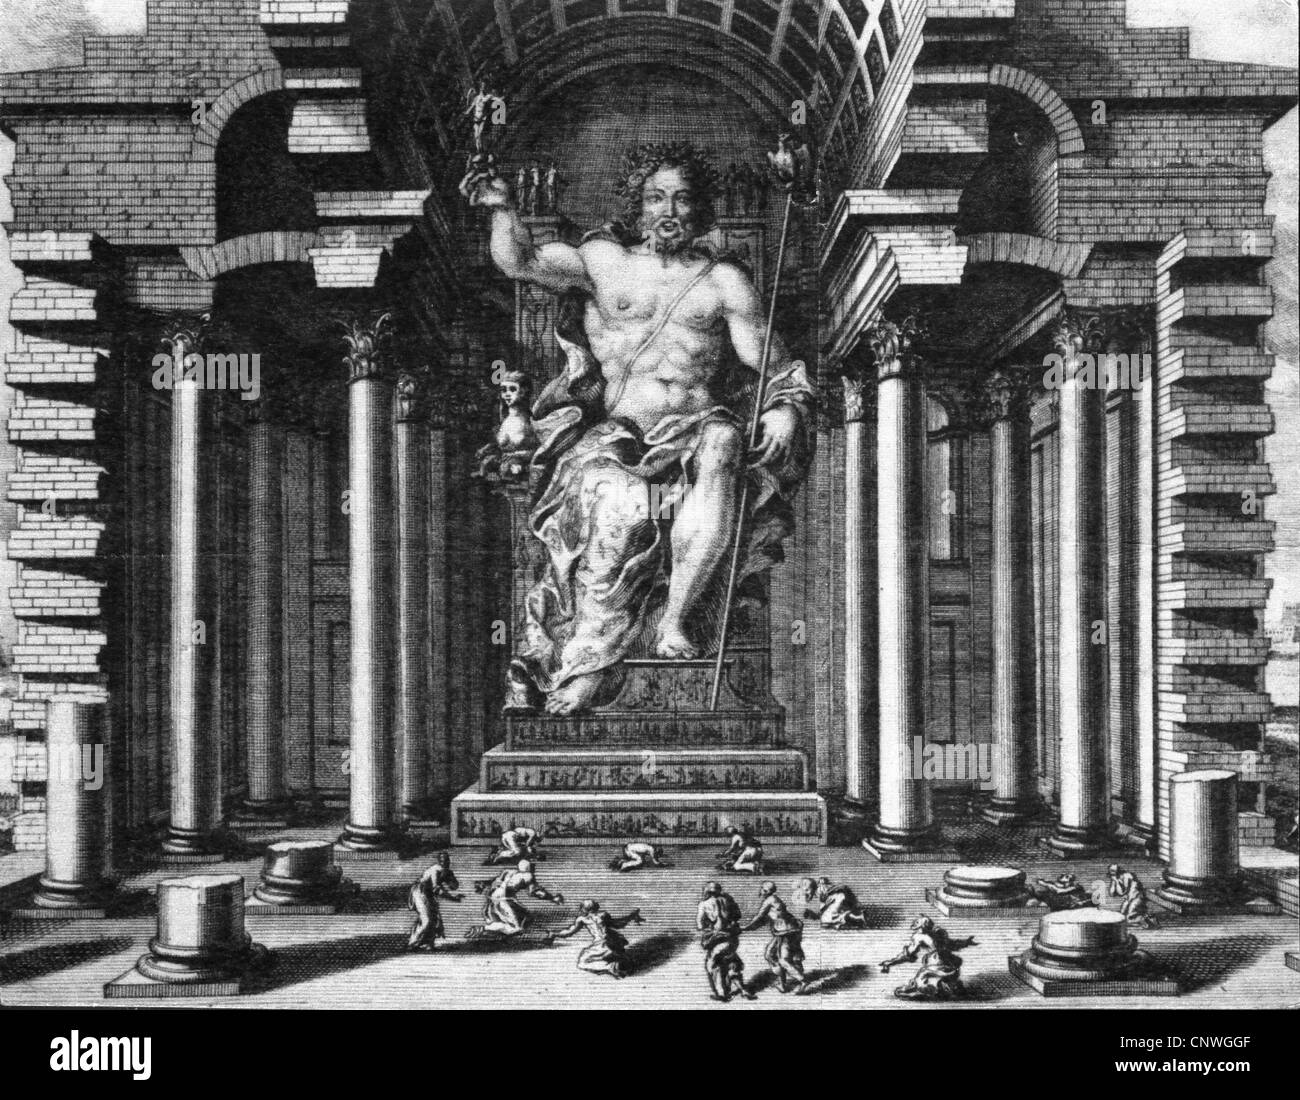 Zeus (lat.: Jupiter), der griechische "König der Lüfte", Anführer der  Götter, gott des Himmels und Donner, Tempel des Zeus, Statue des Zeus bei  Olympia (Rekonstruktion), Holzgravur, 19. Jahrhundert, halbe Länge  Stockfotografie - Alamy